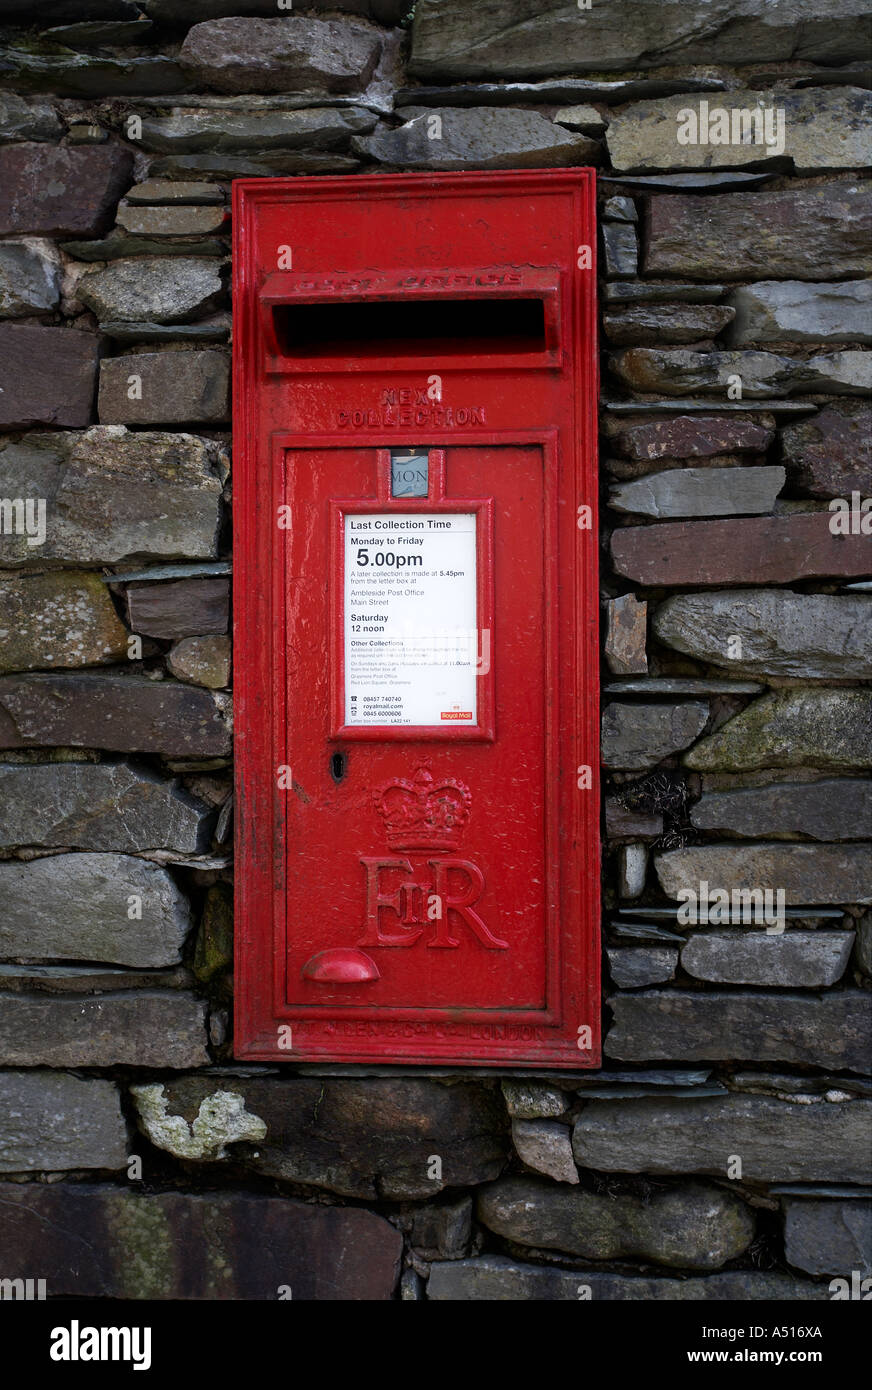 Rot Royal Mail Briefkasten in Schiefer Wand Grasmere Seenplatte Cumbria  Stockfotografie - Alamy